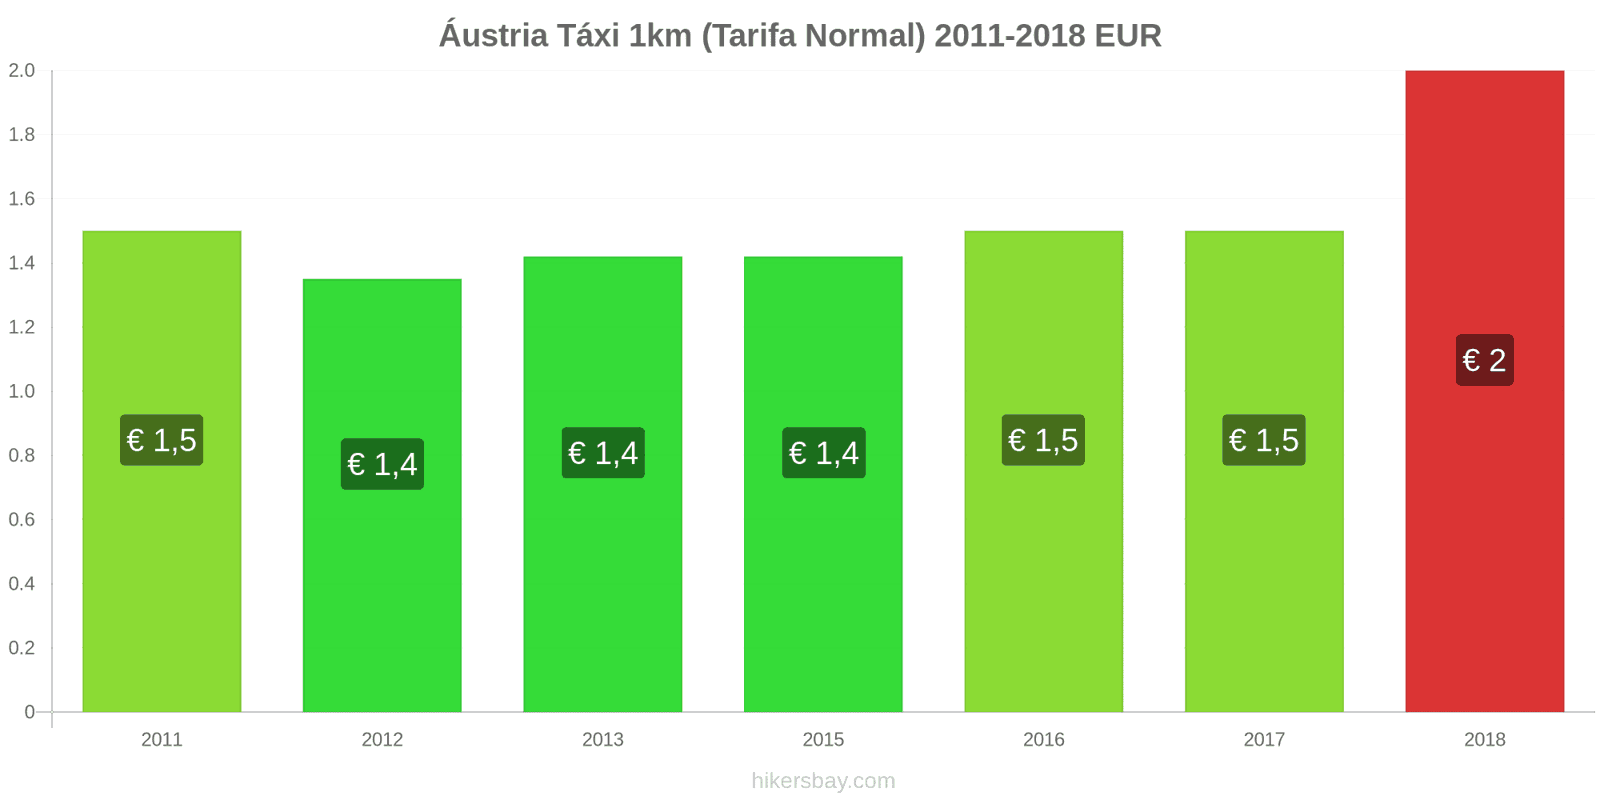 Áustria mudanças de preços Táxi 1km (Tarifa Normal) hikersbay.com